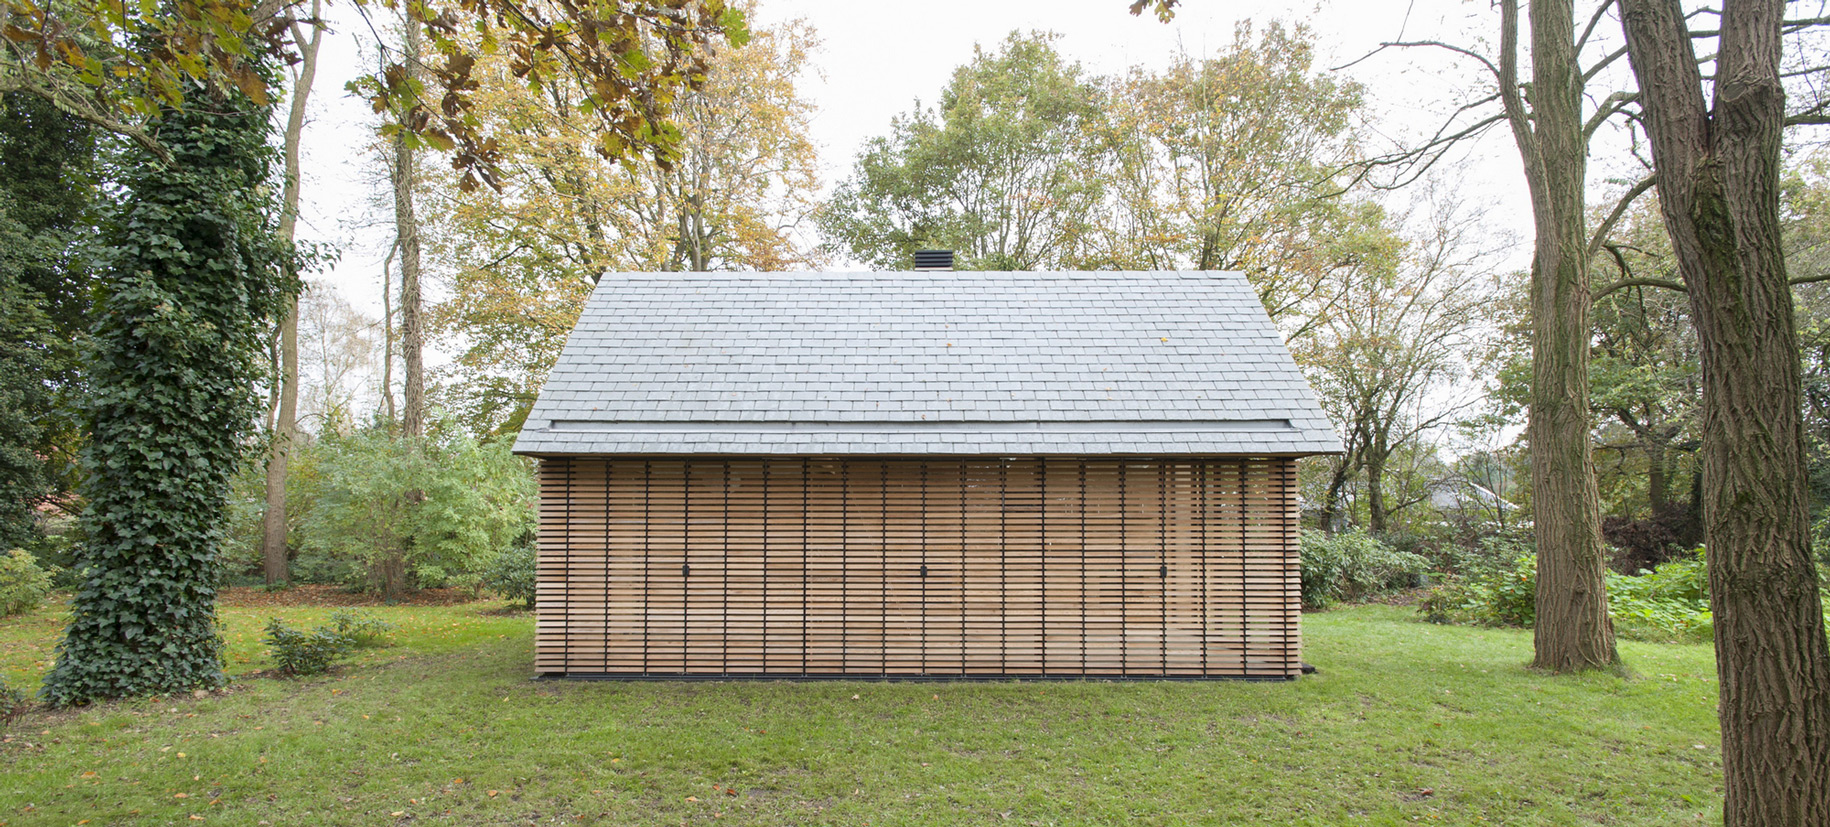 Recreationhouse / Roel van Norel + Zecc Architecten (15)